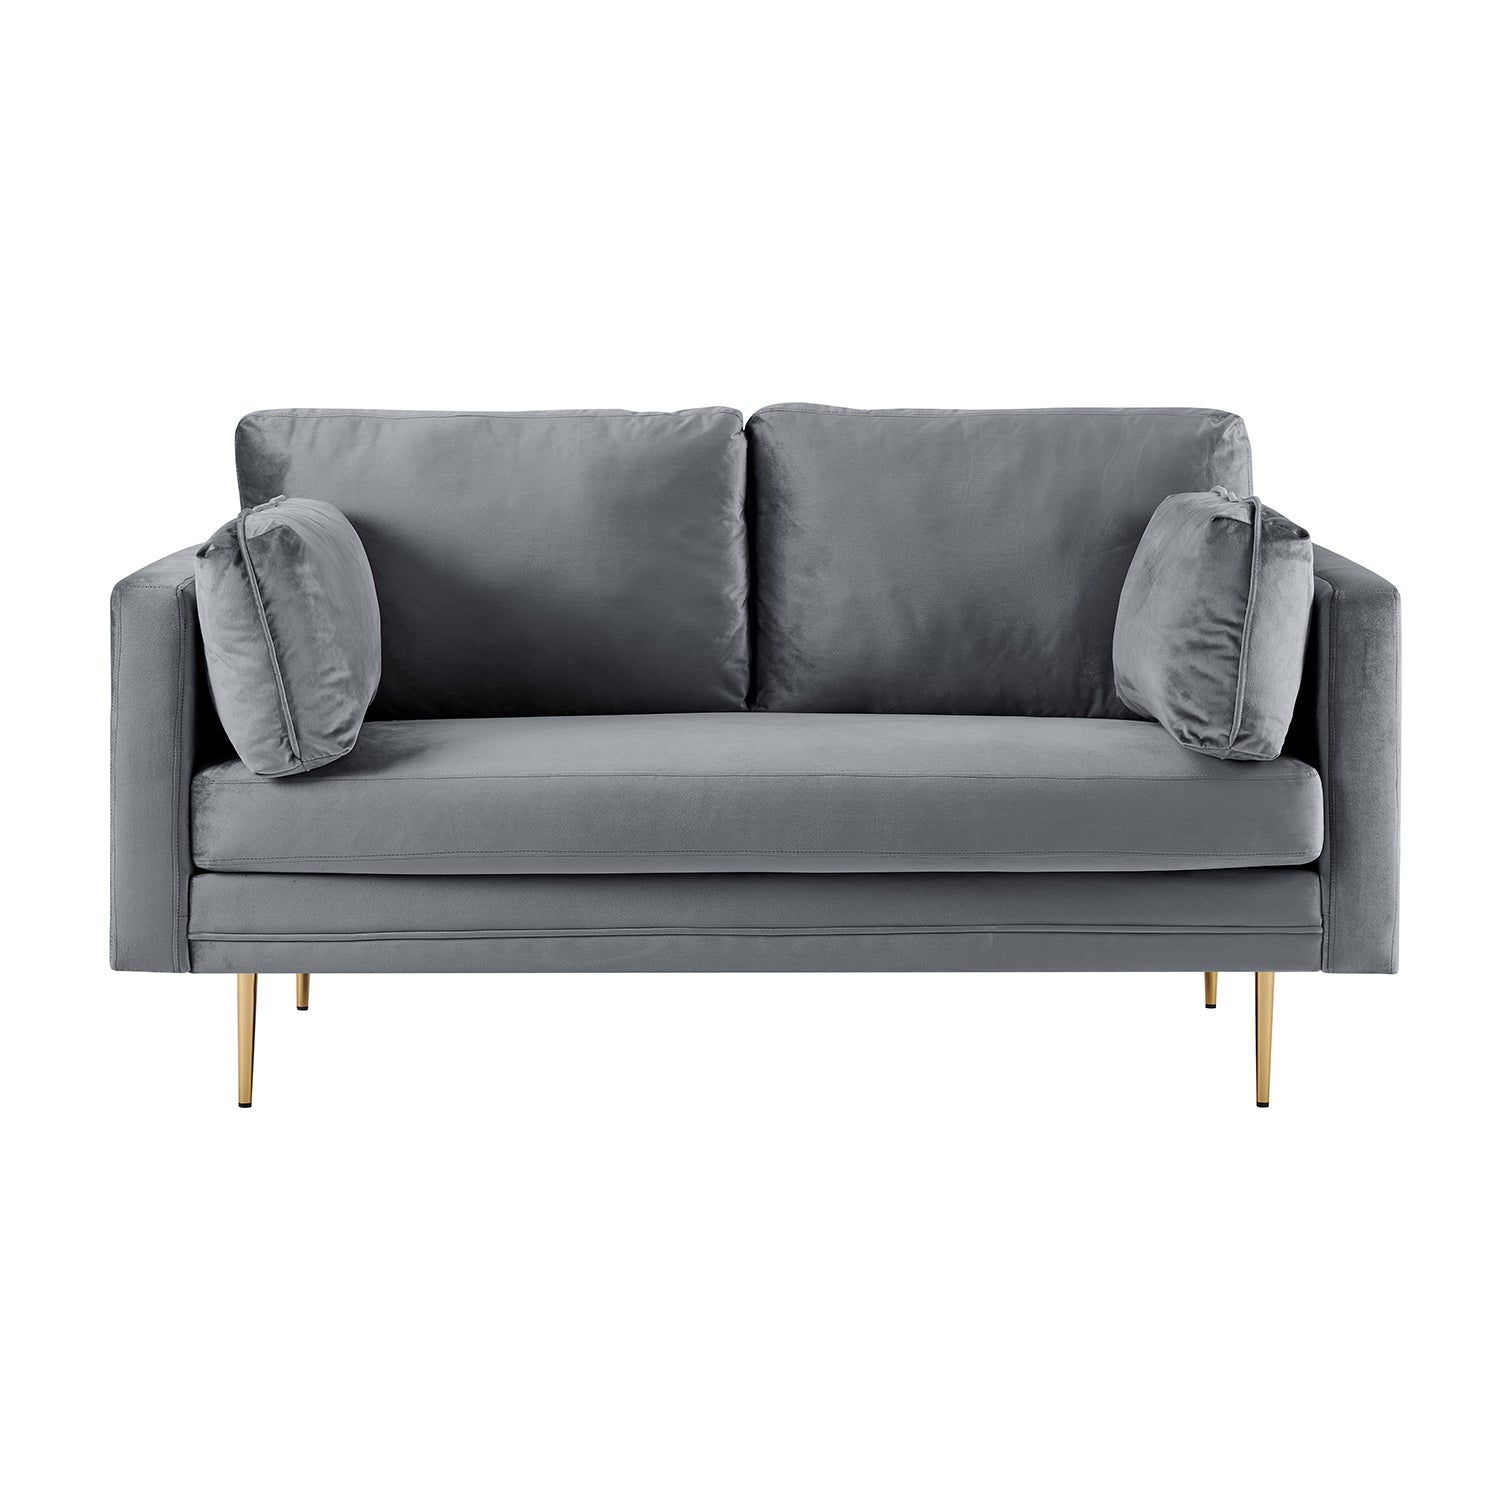 Pelham Grey Velvet Sofa, 2-Seater and 3-Seater | Buy Designer Home ...